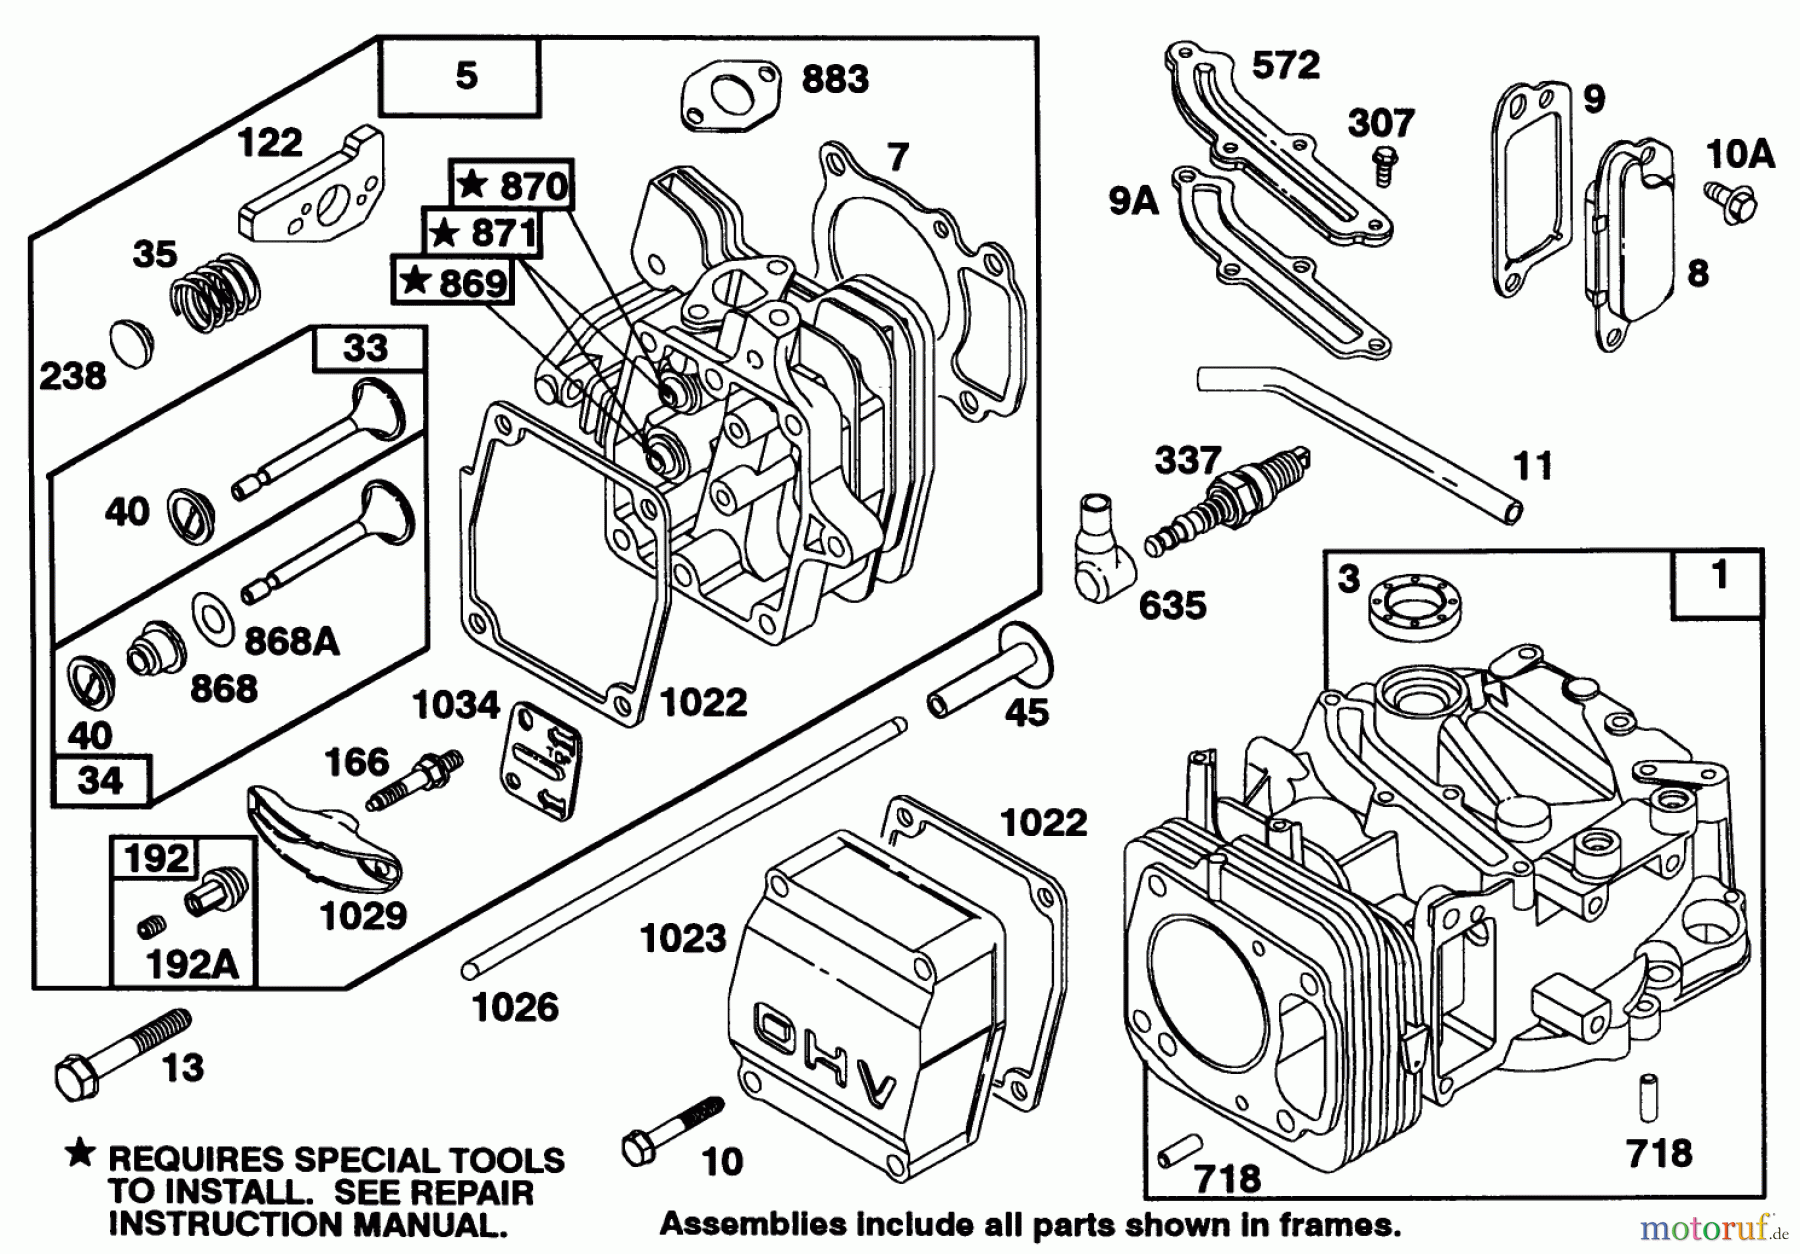  Toro Neu Mowers, Walk-Behind Seite 1 20328B - Toro Lawnmower, 1992 (2000001-2999999) ENGINE BRIGGS & STRATTON MODEL 97772-0112-01 #1